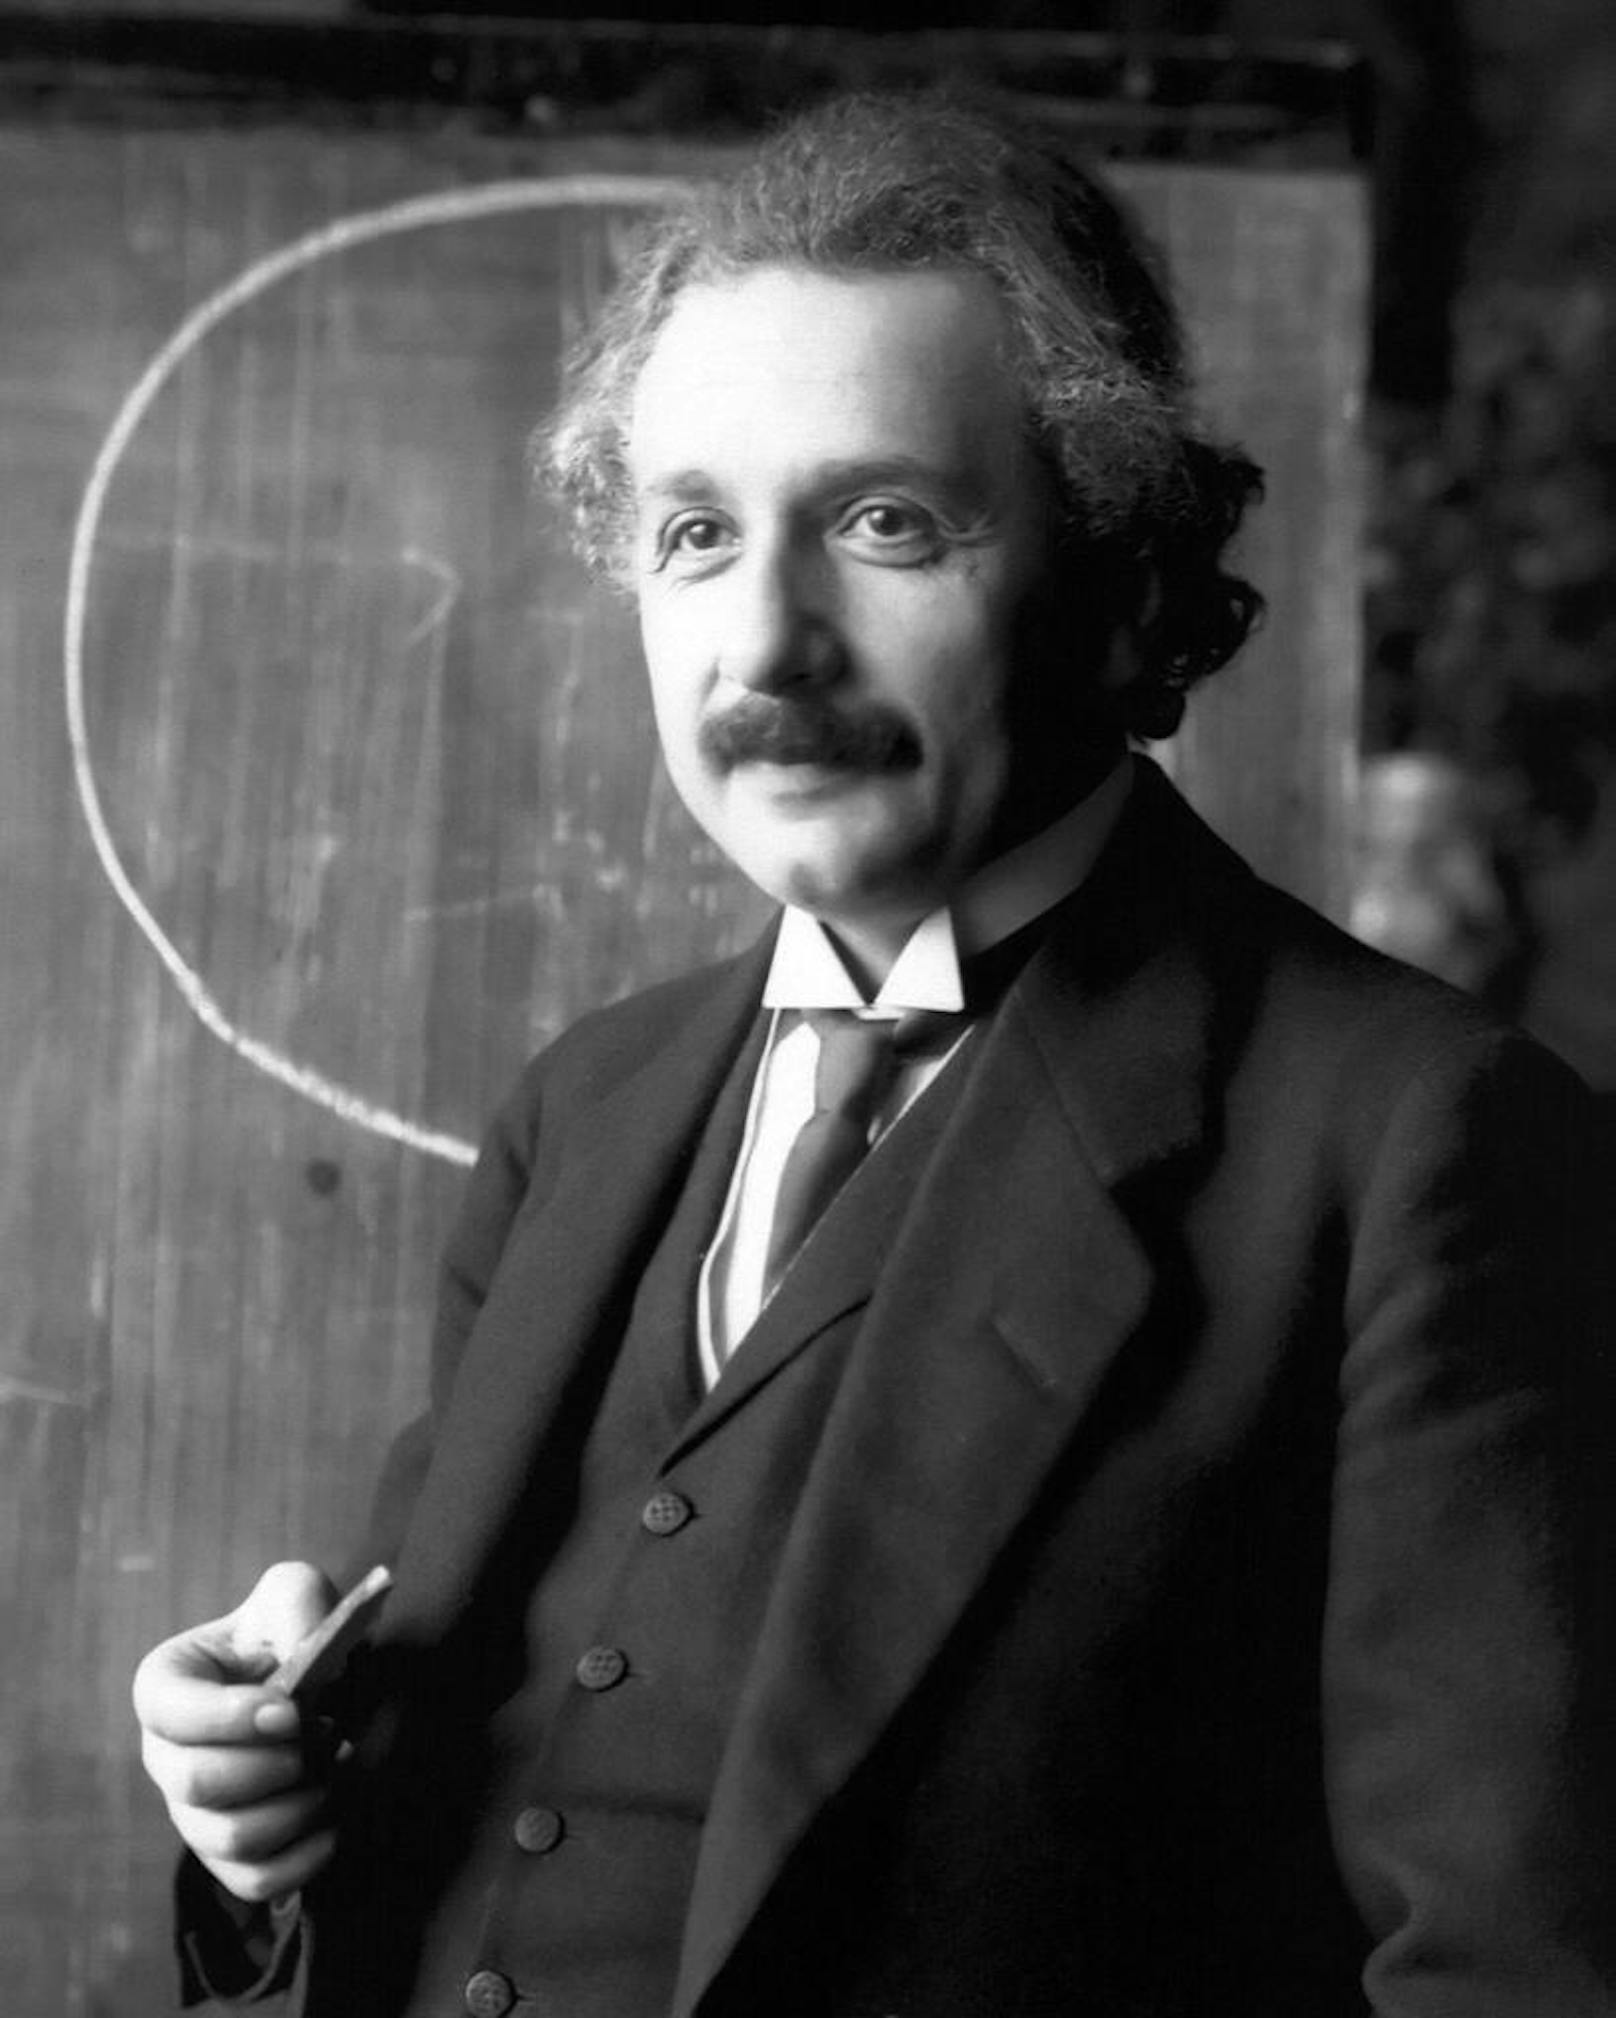 <b>Albert Einstein (1879-1955)</b>

"Zwei Dinge sind unendlich, das Universum un die menschliche Dummheit. Aber beim Universum bin ich mir noch nicht ganz sicher."